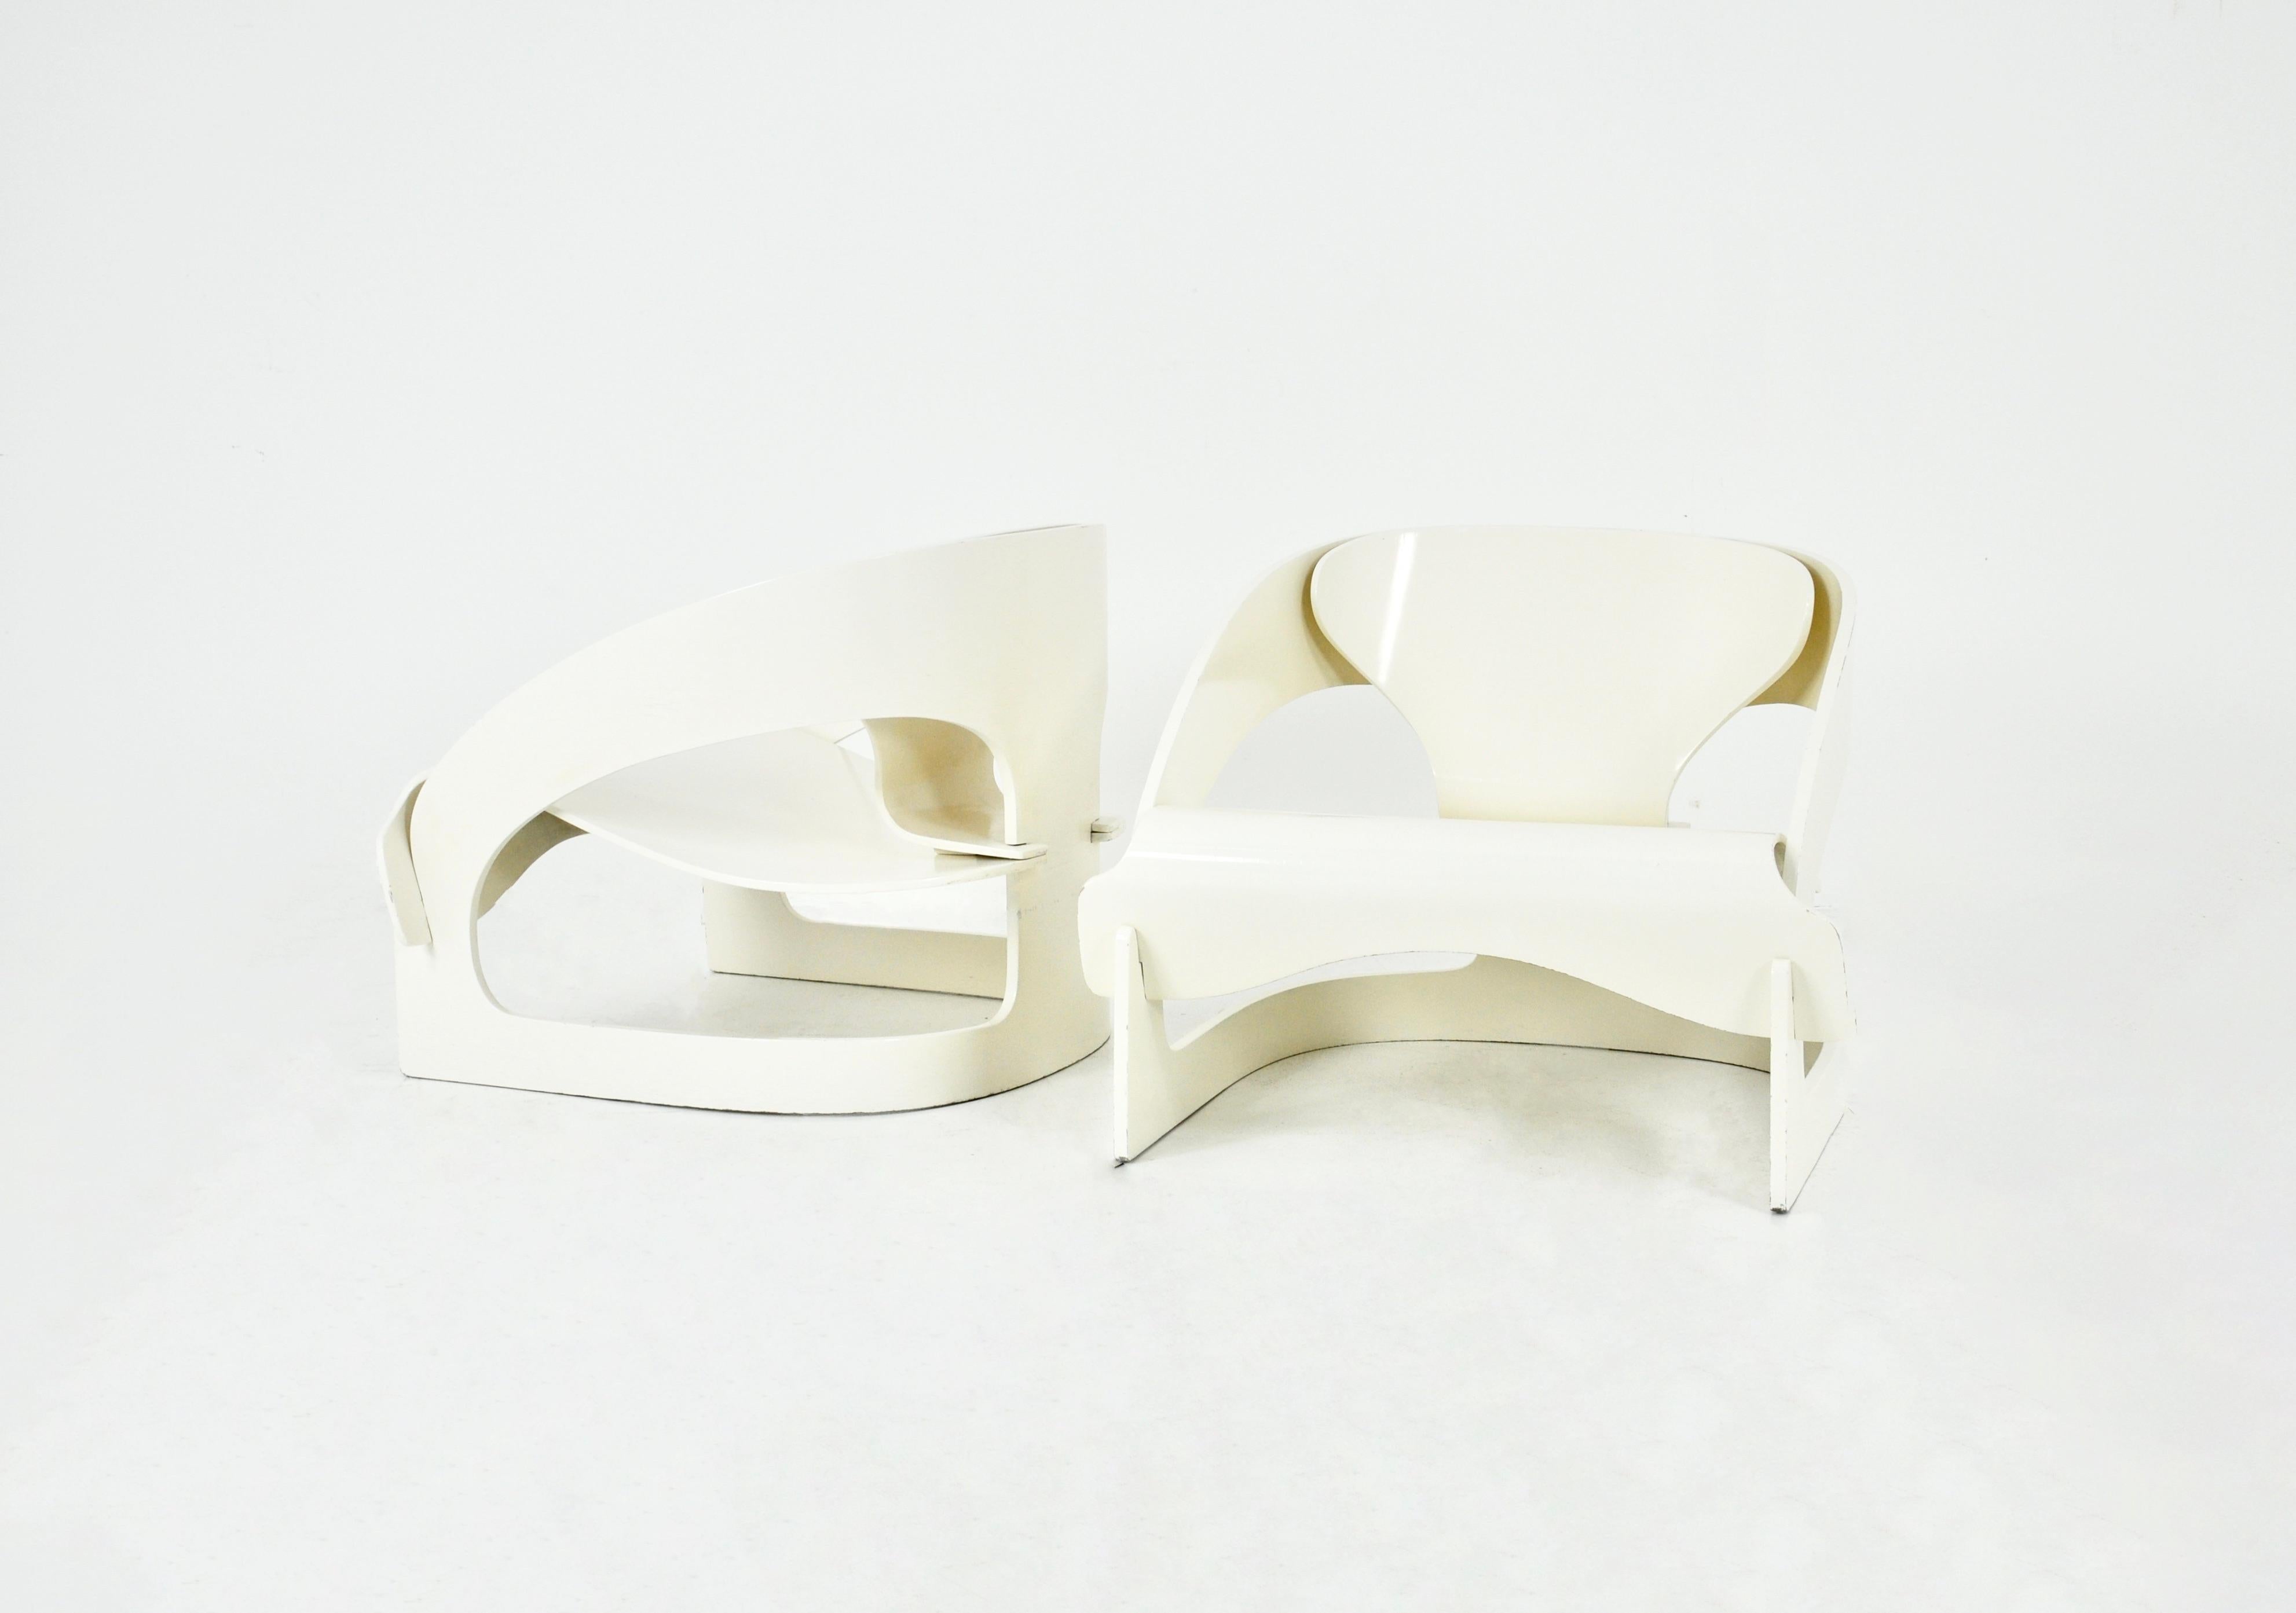 Ensemble de 2 fauteuils en bois blanc conçus par Joe Colombo, modèle 4801.  Numéroté 16. Hauteur d'assise 34 cm. Usure due au temps et à l'âge.